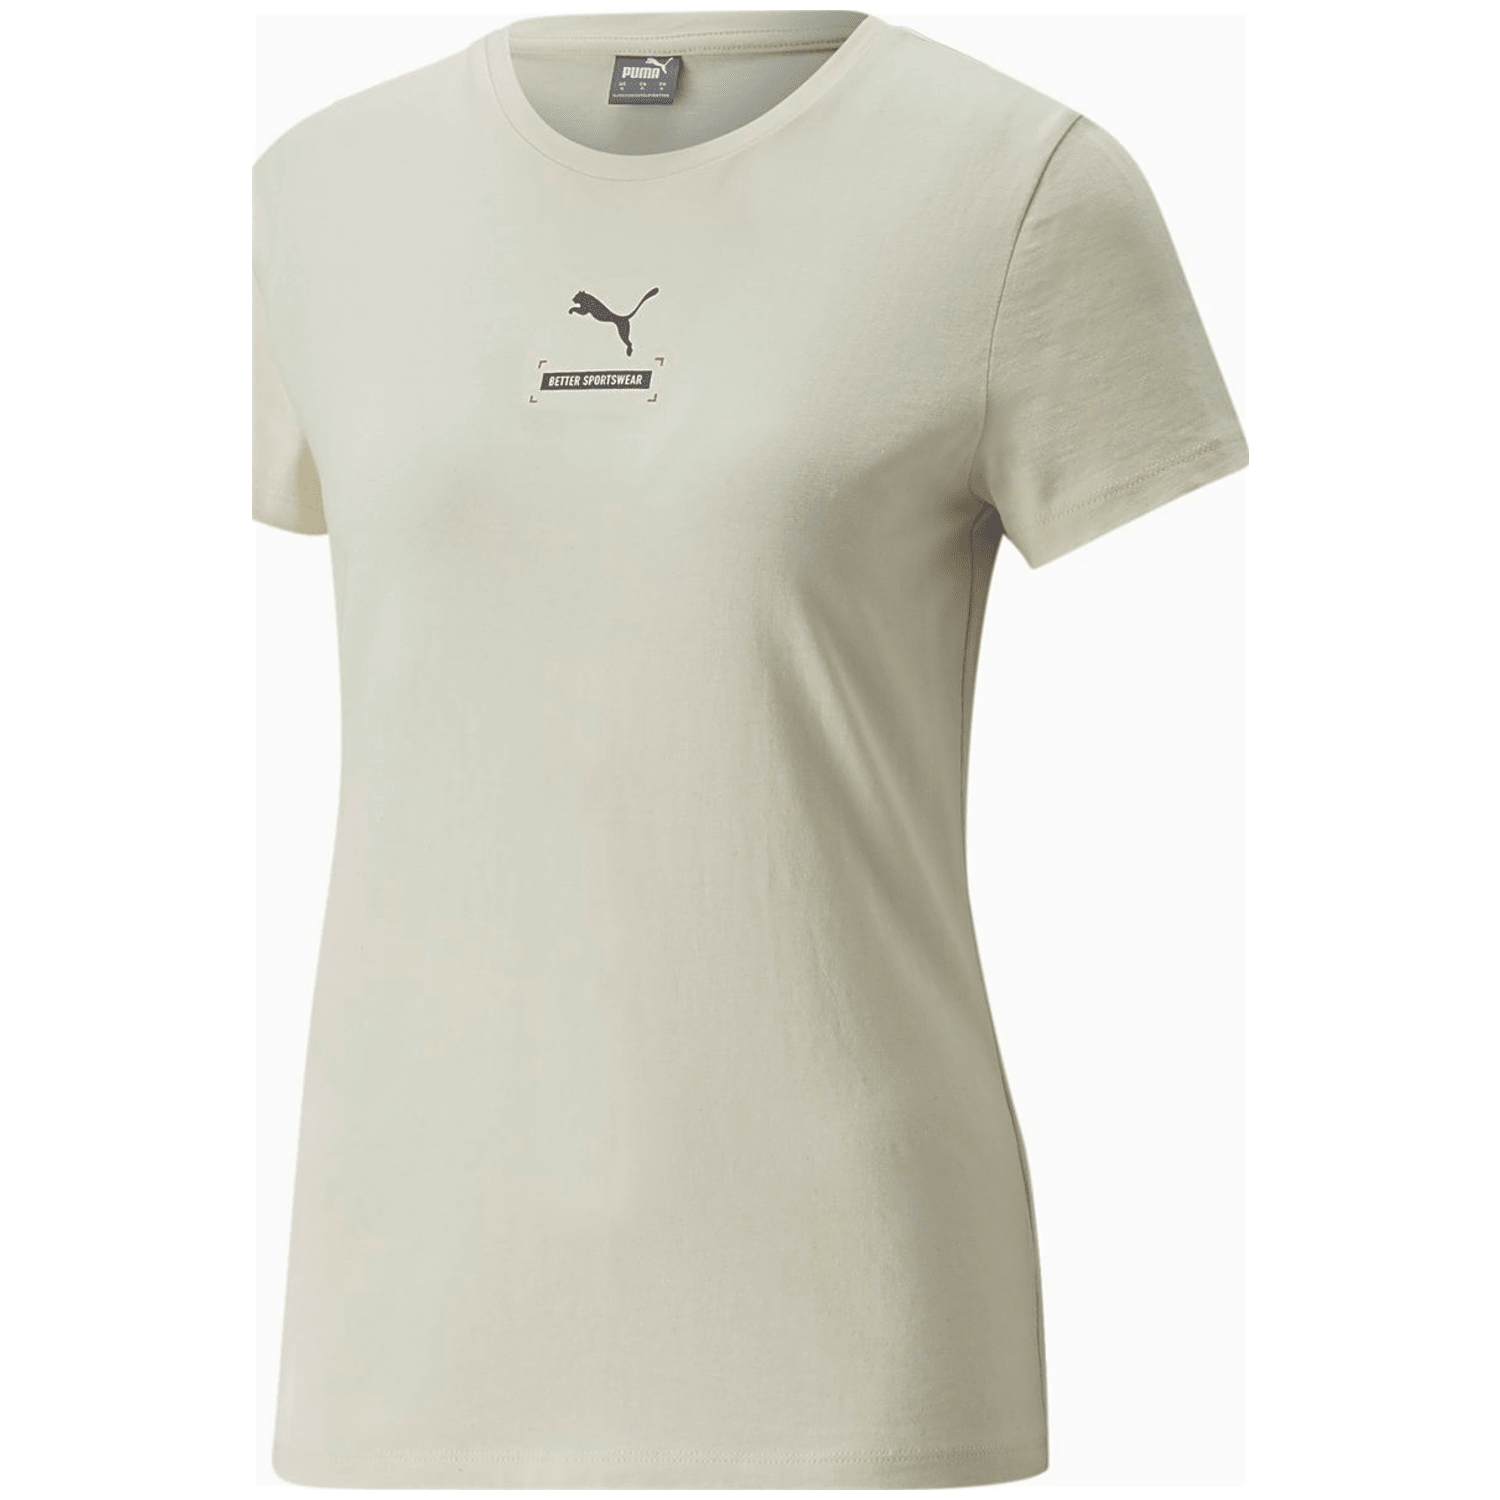 Puma Better Tee Damen T-Shirt